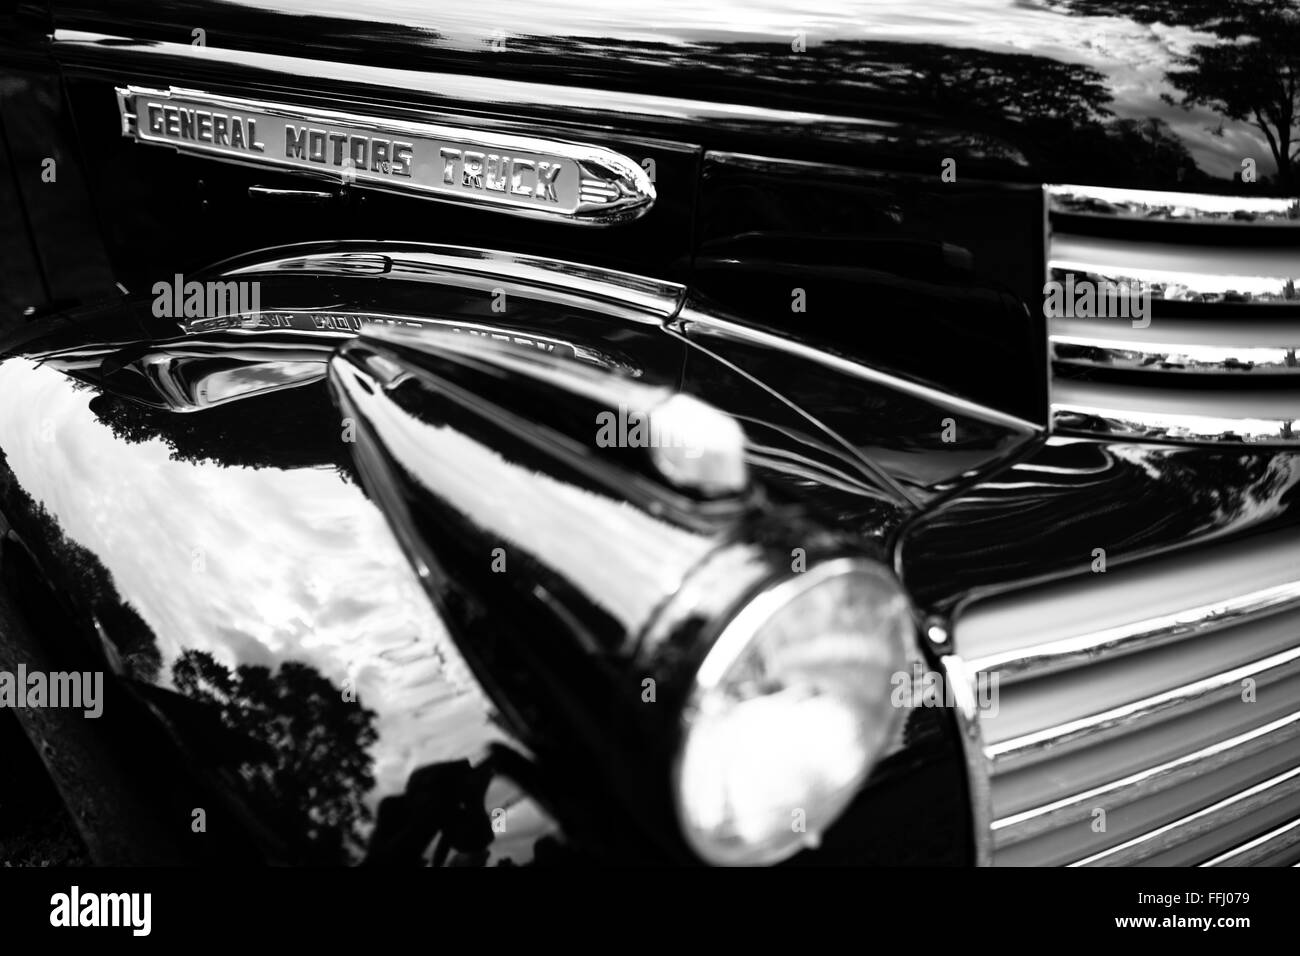 Dettaglio Immagini monocromatiche di spettacolarmente restaurata classic cars. Foto Stock